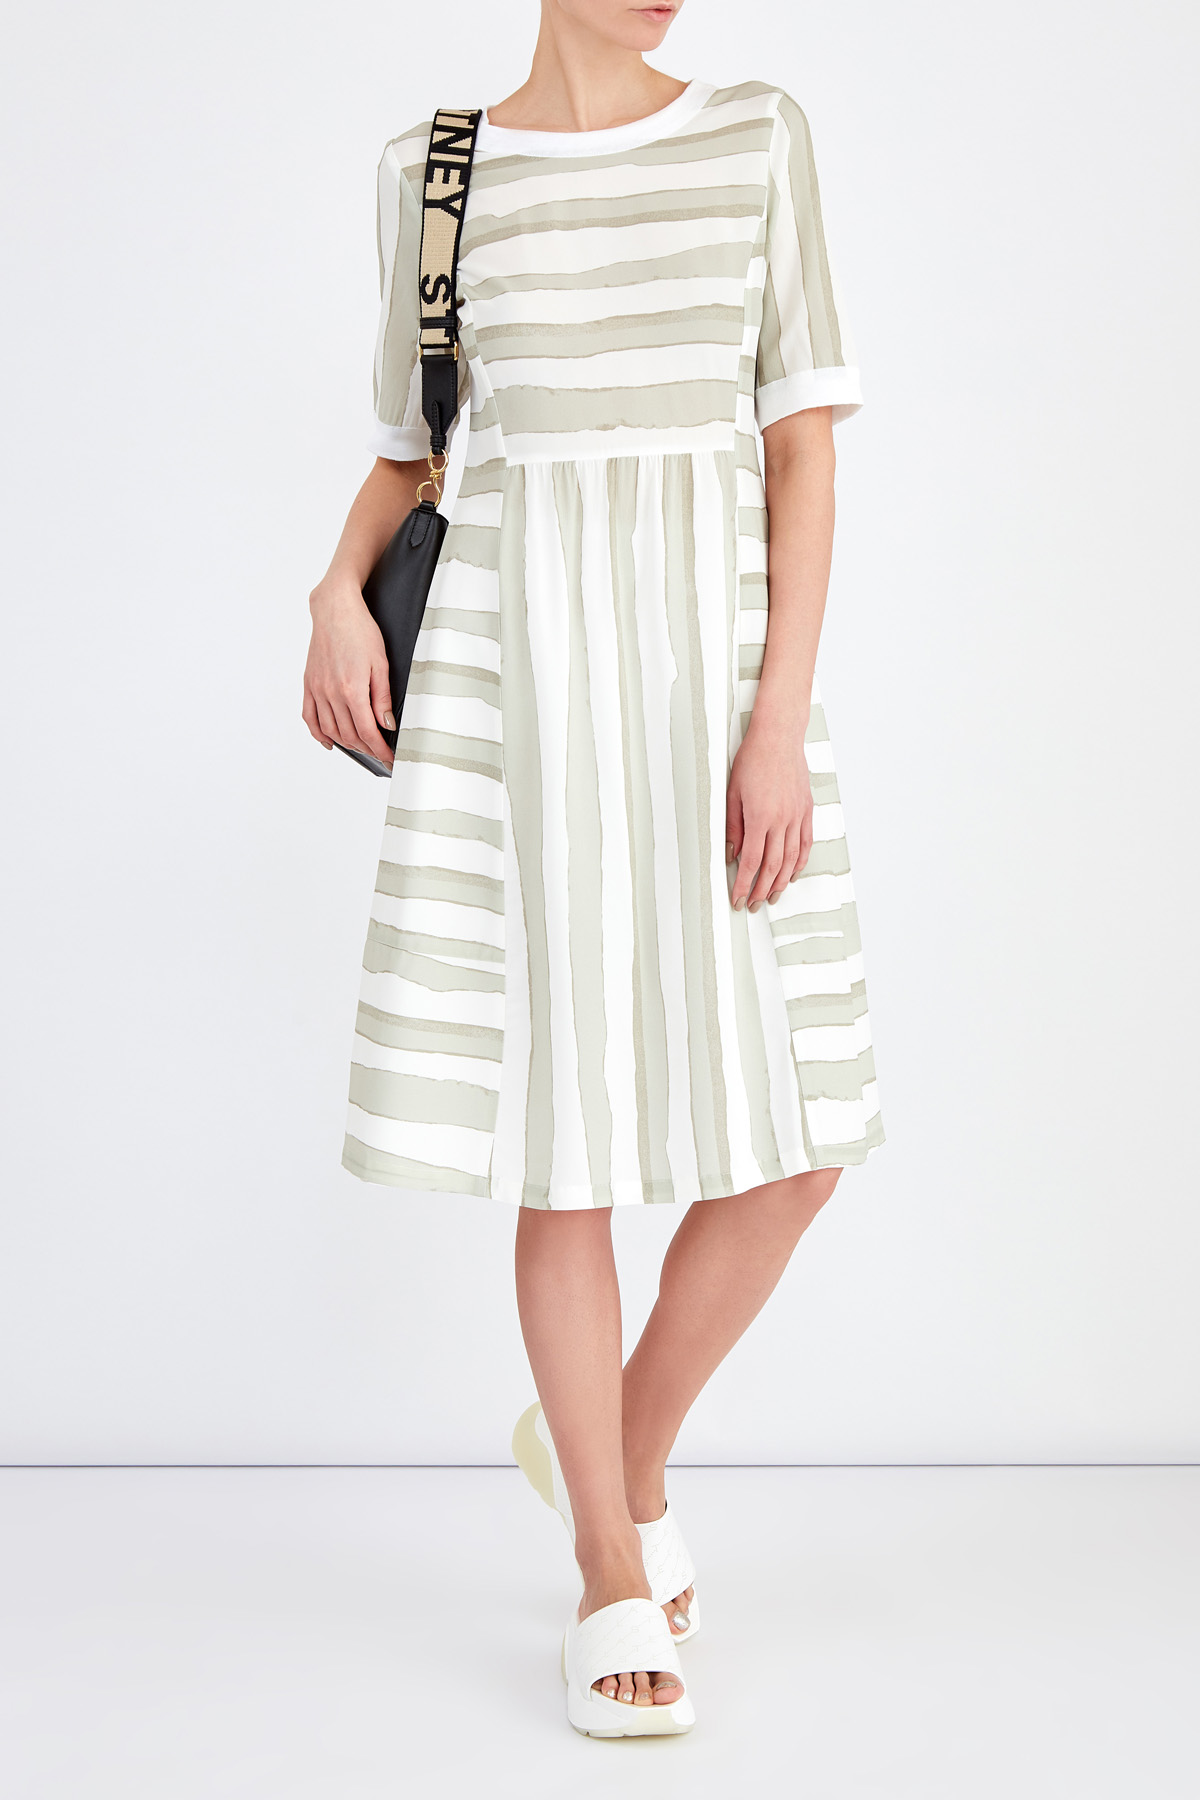 Приталенное платье из струящейся ткани с трикотажной отделкой LORENA ANTONIAZZI, цвет мульти, размер 42 - фото 2